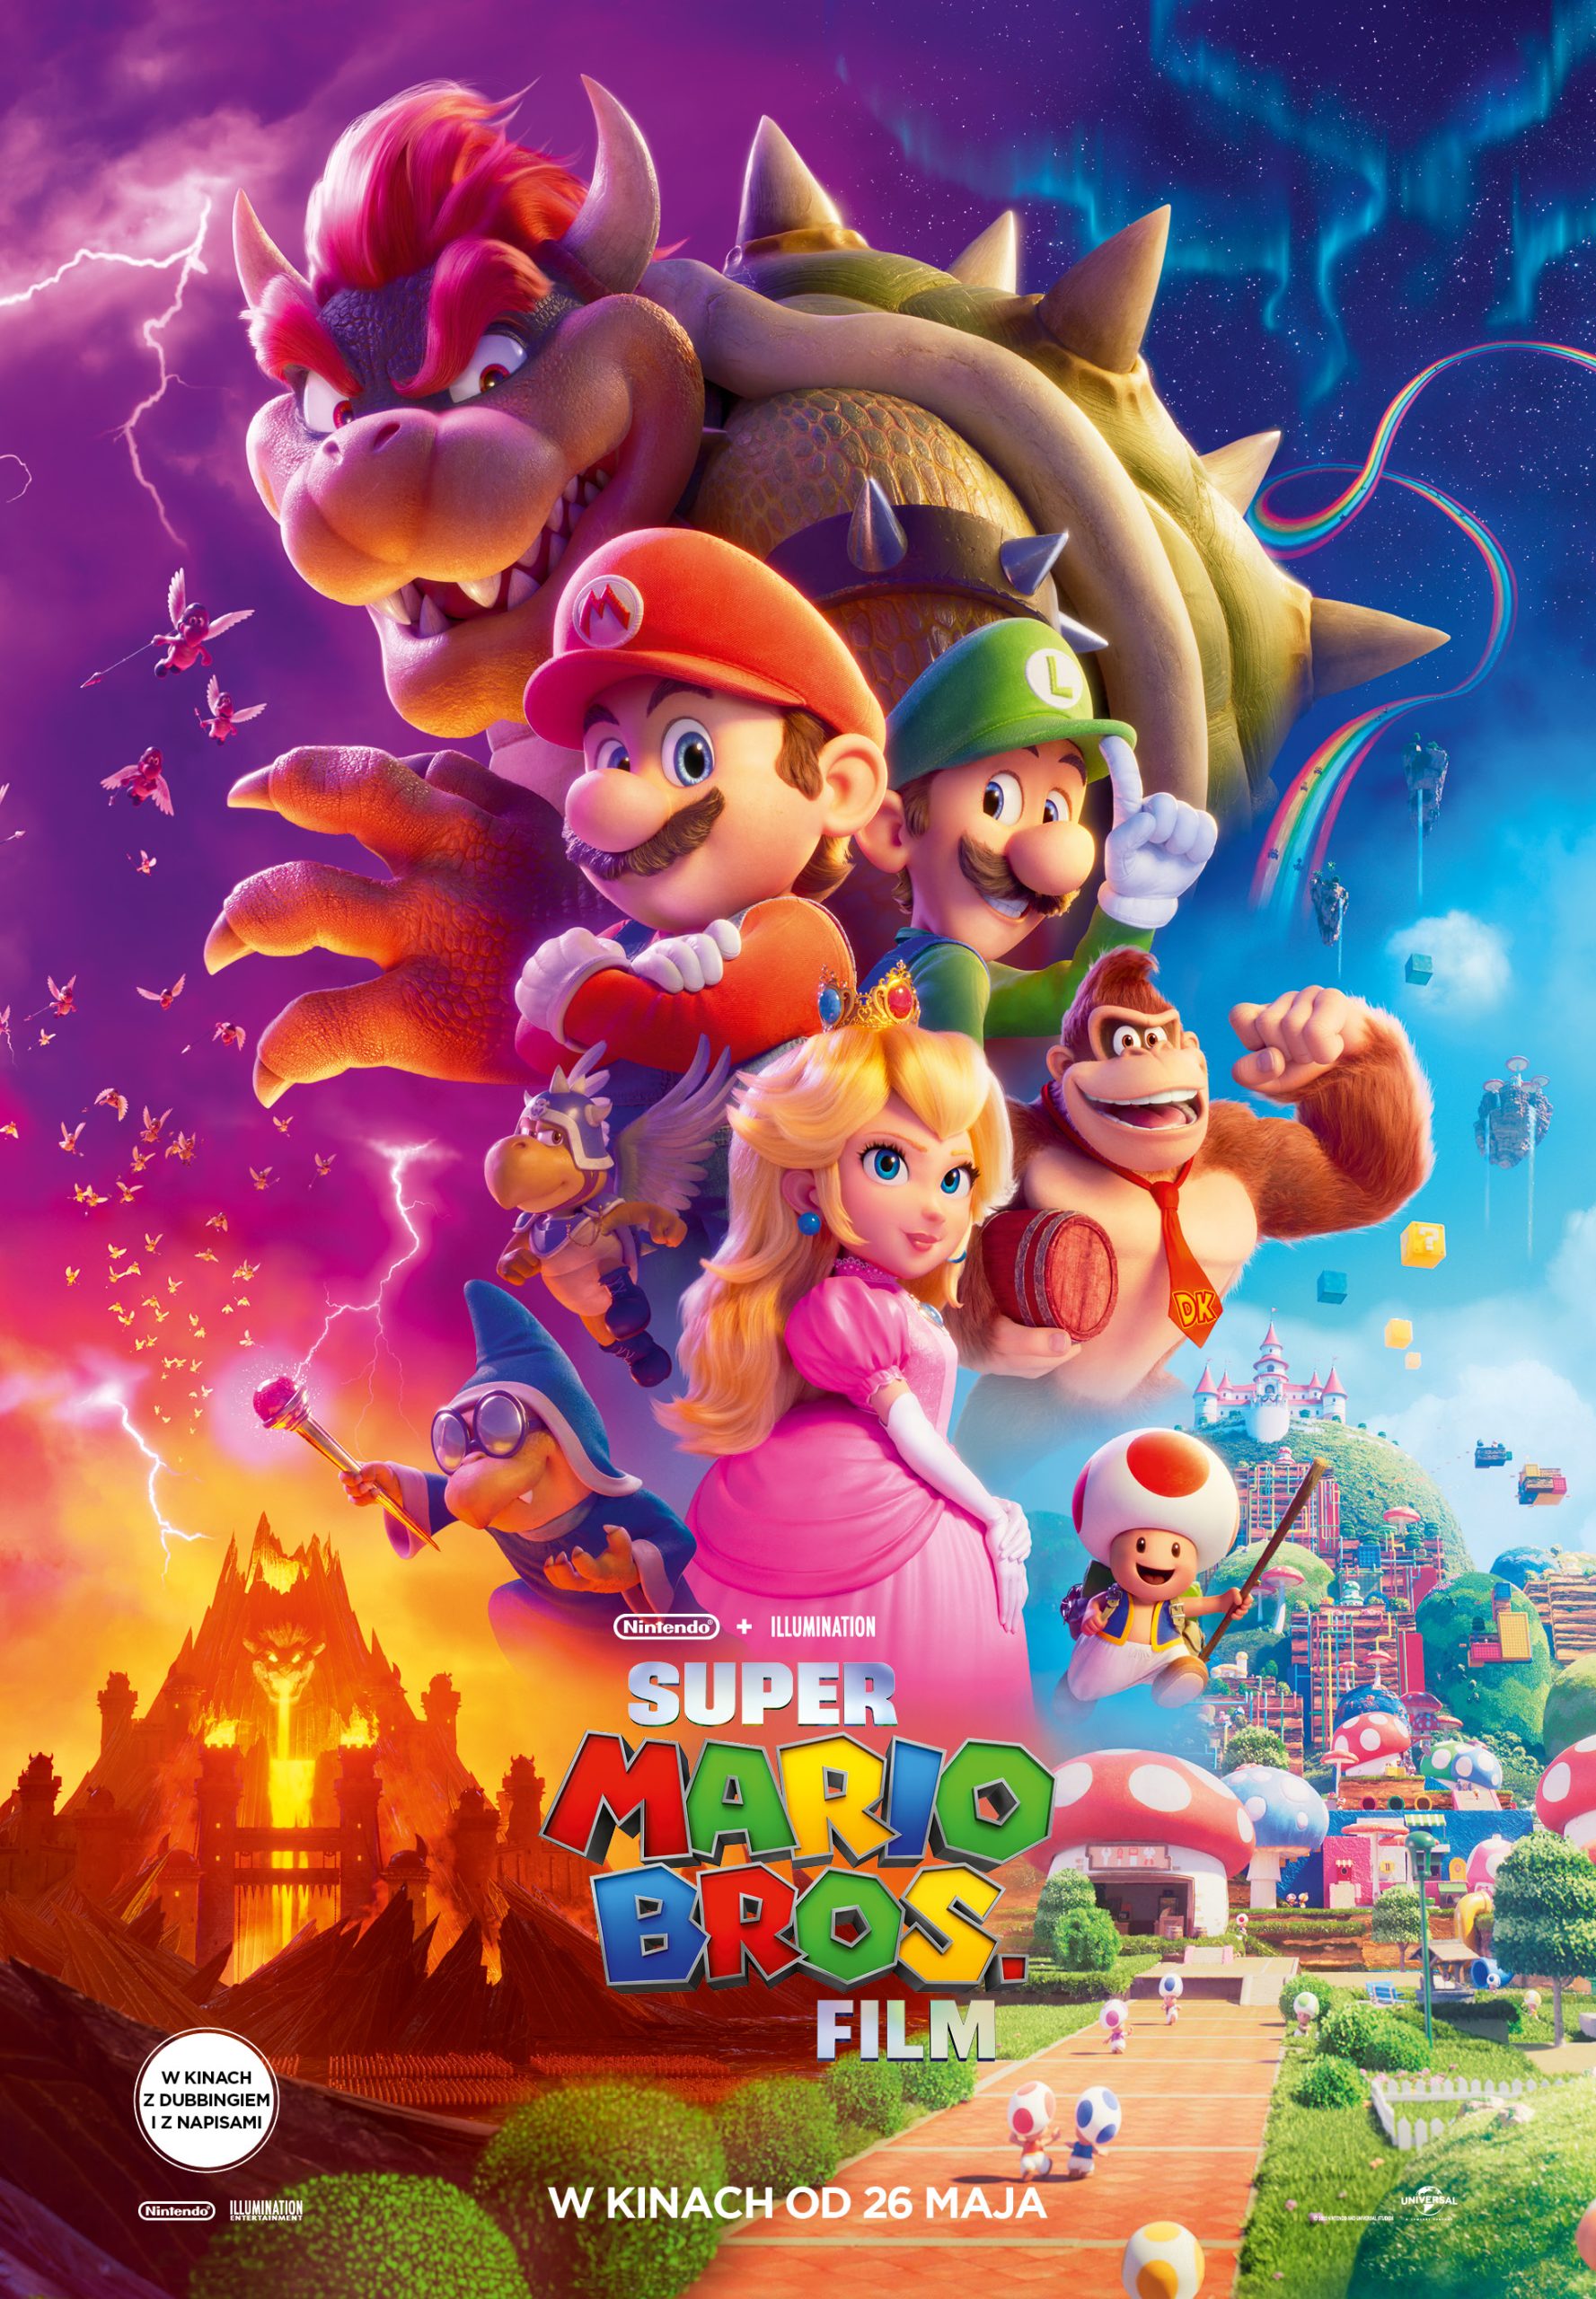 Plakat do filmu pt. "Super Mario Bros.Film"